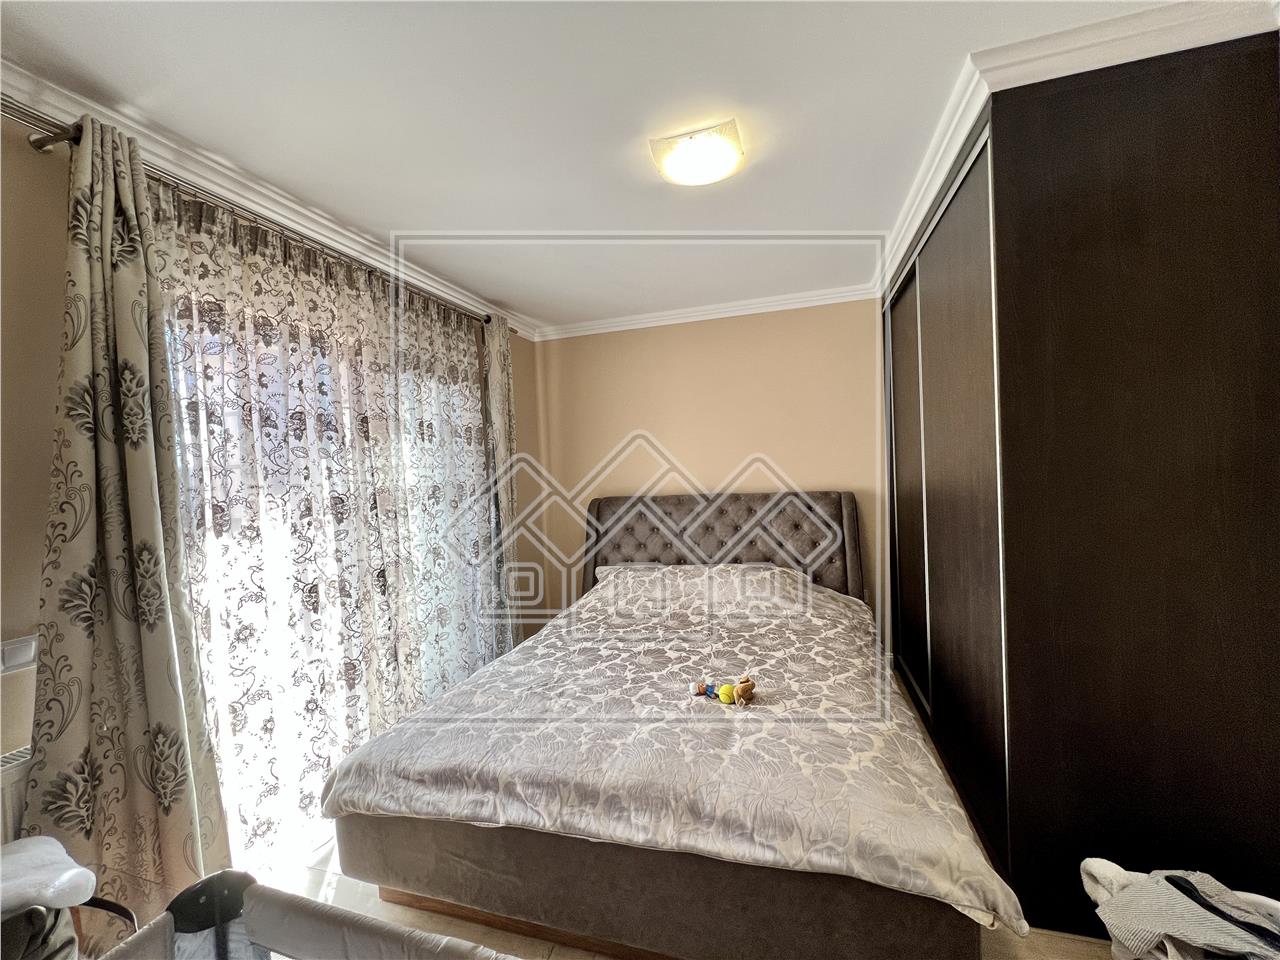 Wohnung zum Verkauf in Sibiu - 2 Zimmer und Balkon - 1/3 Etage - Valea